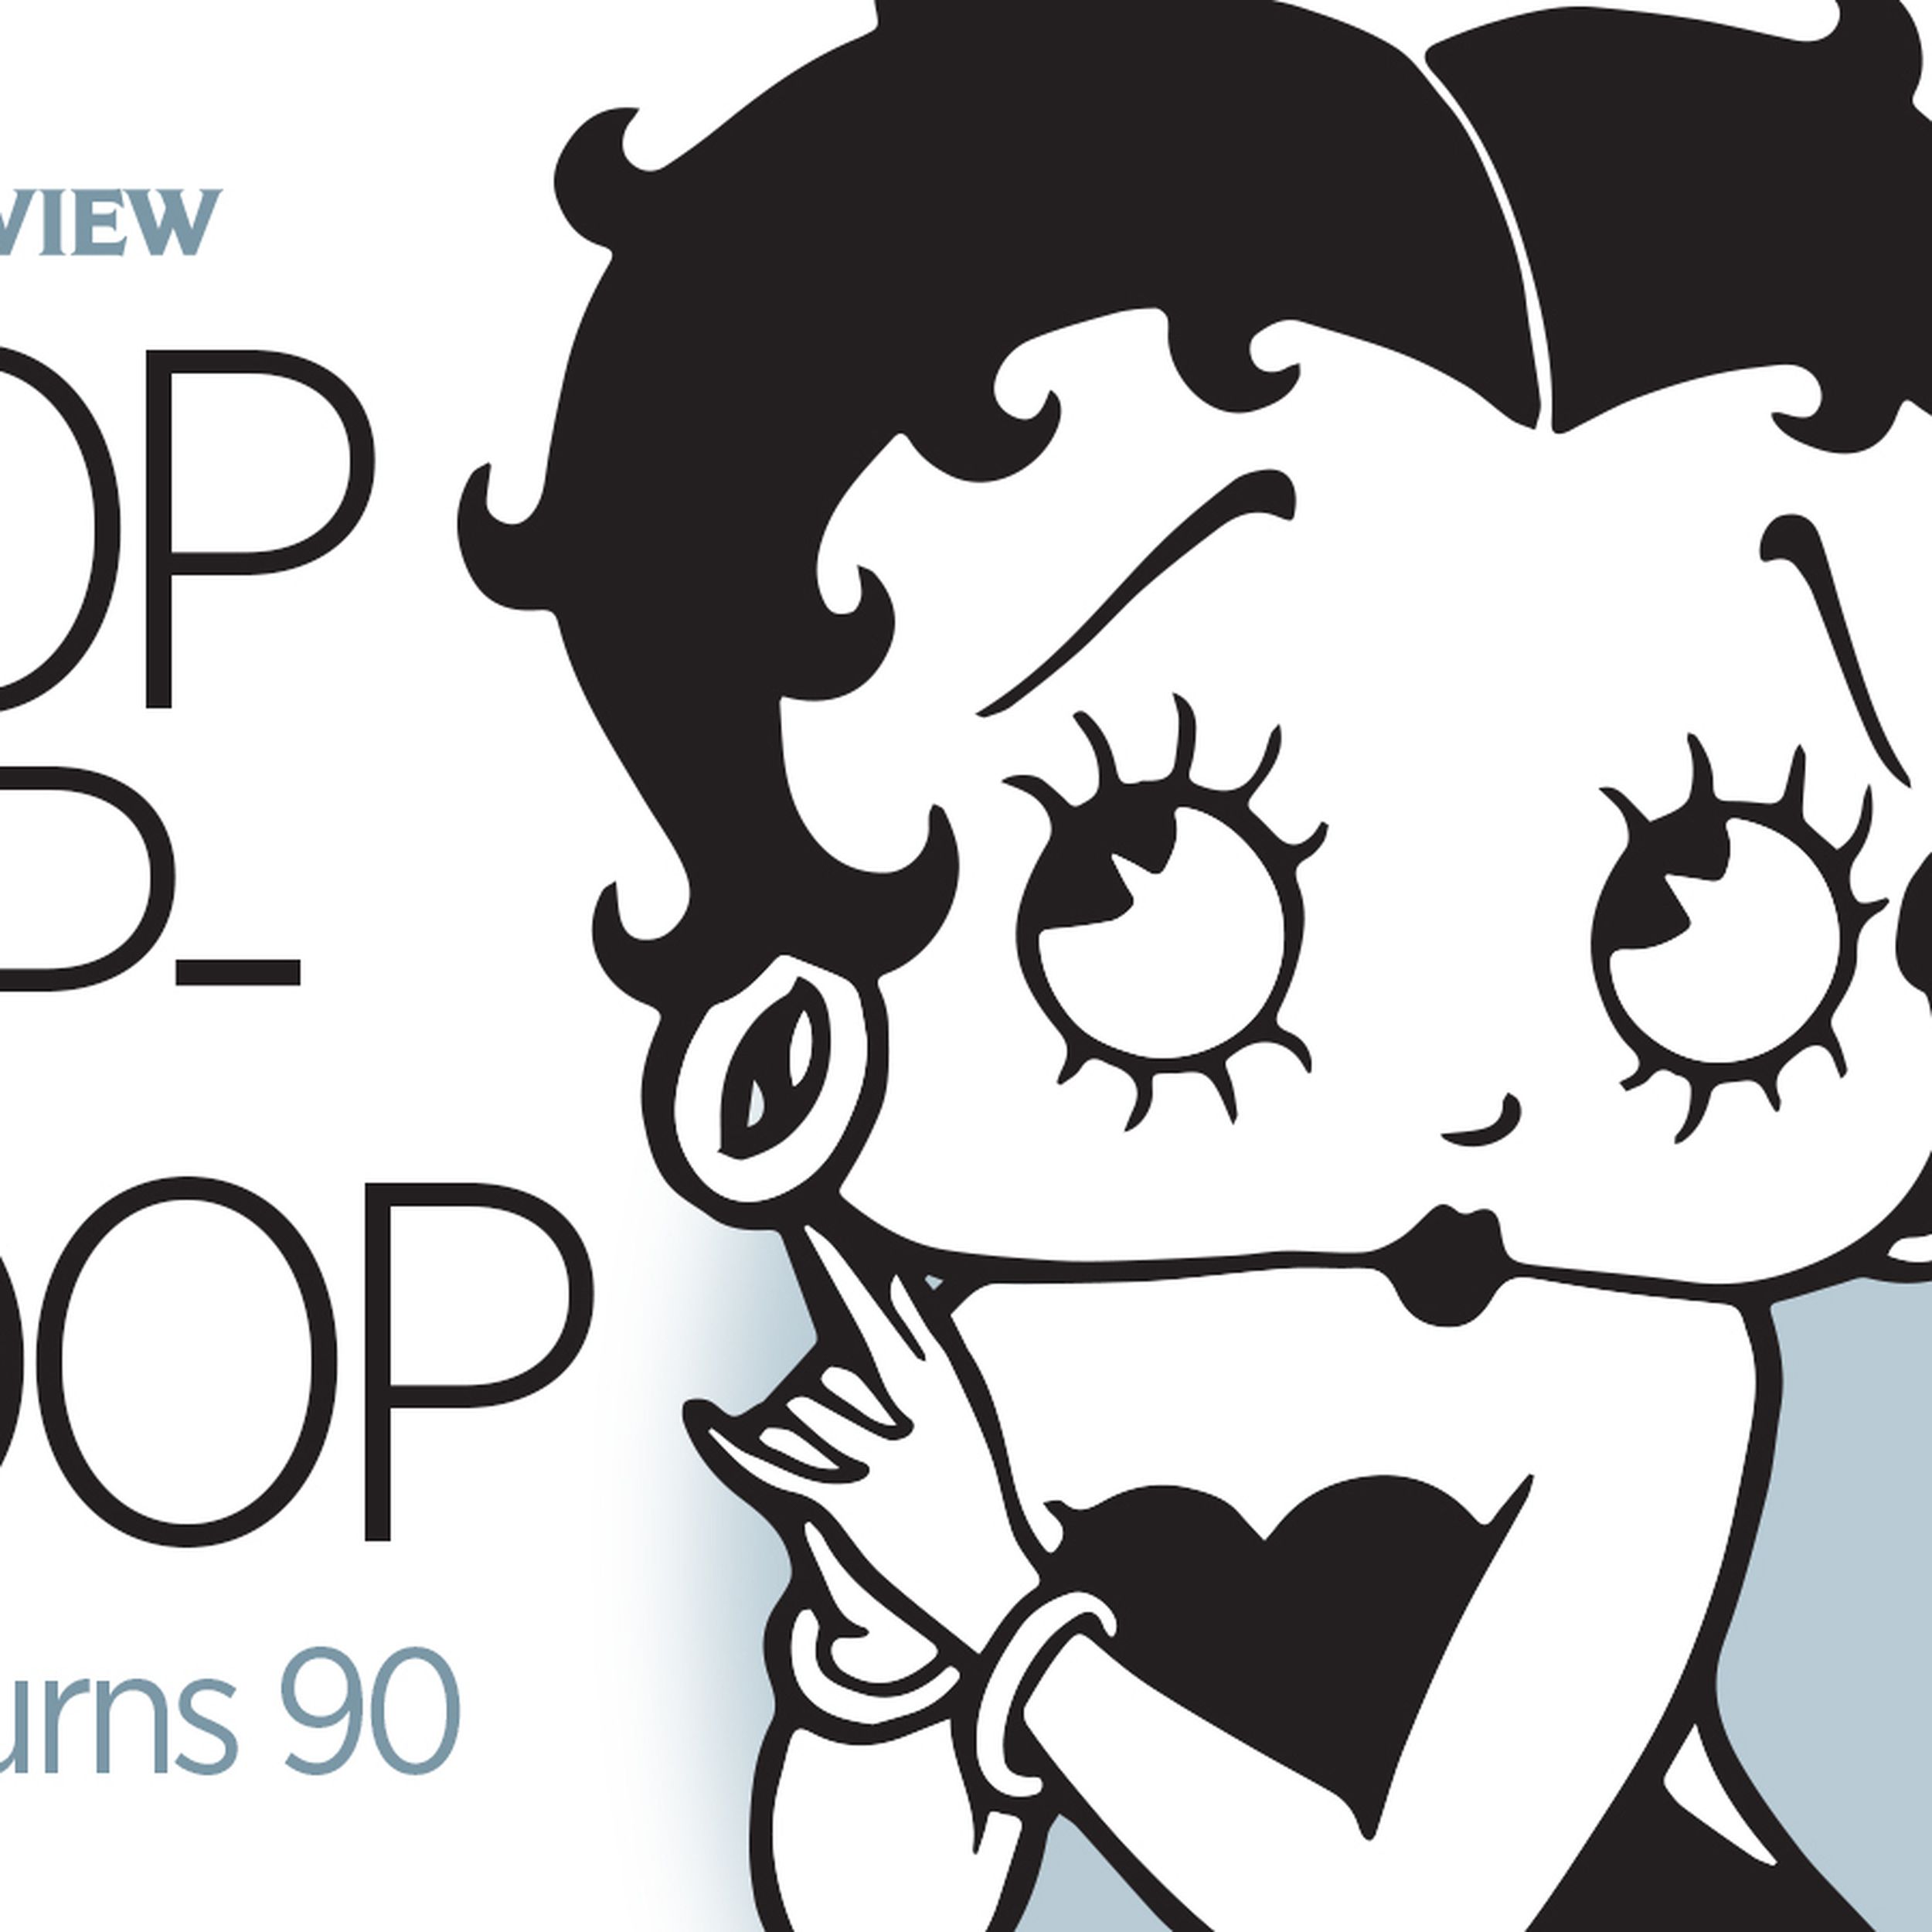 Boop-oop-a-doop: Betty Boop turns 90